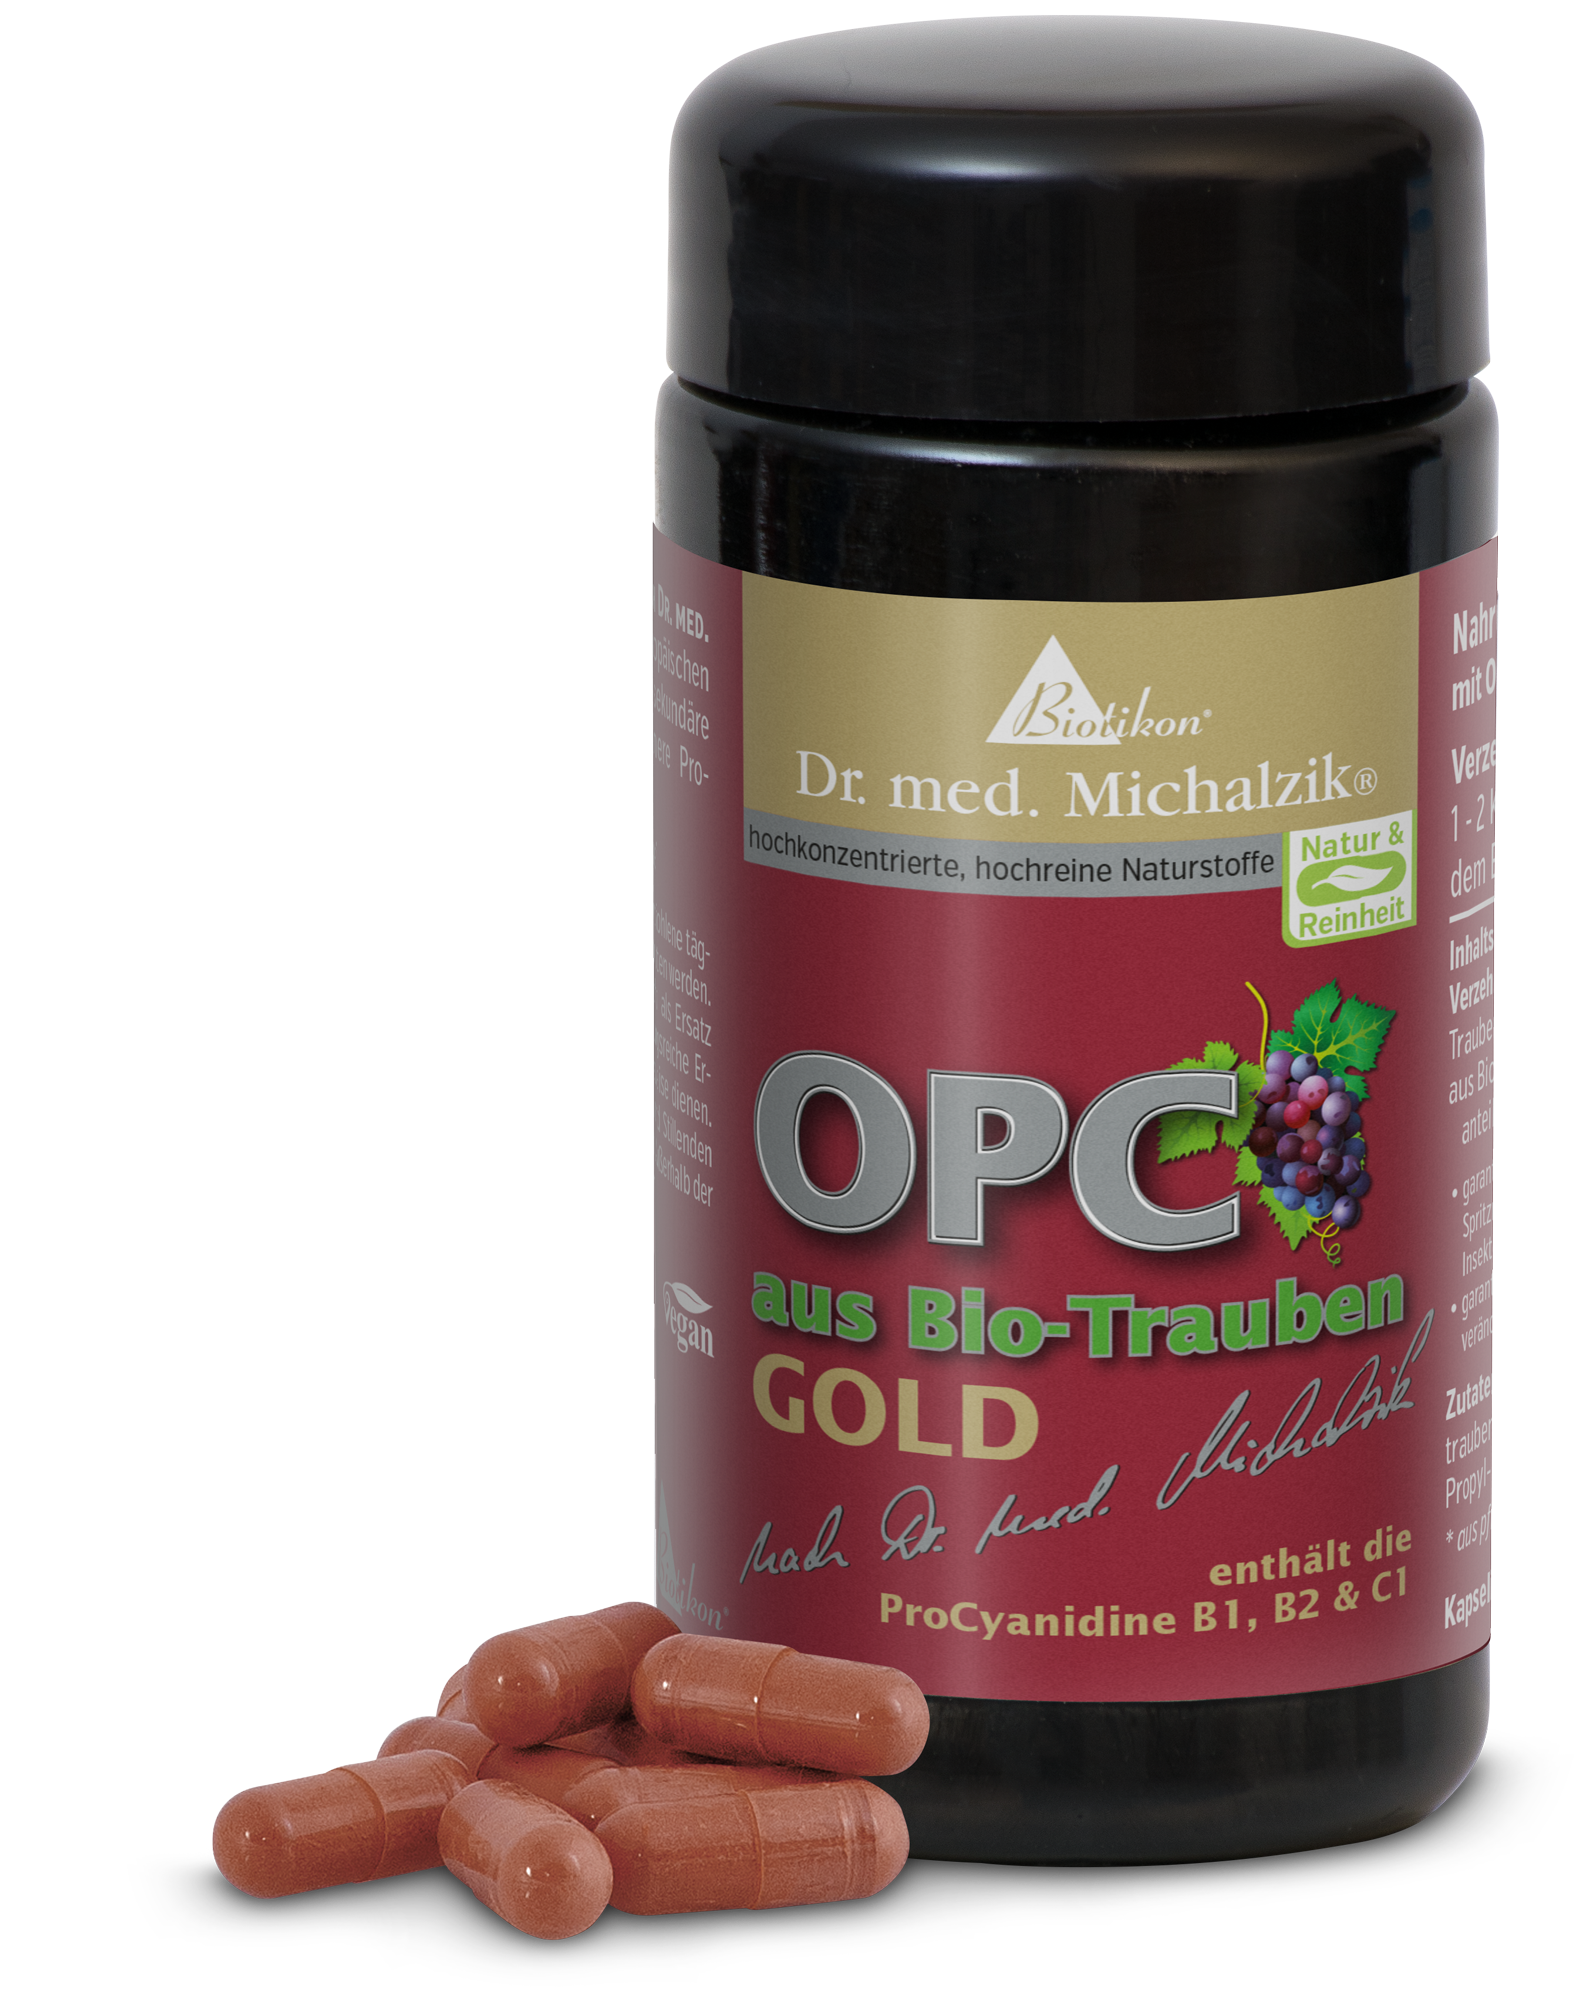 OPC aus Bio-Trauben GOLD nach Dr. med. Michalzik